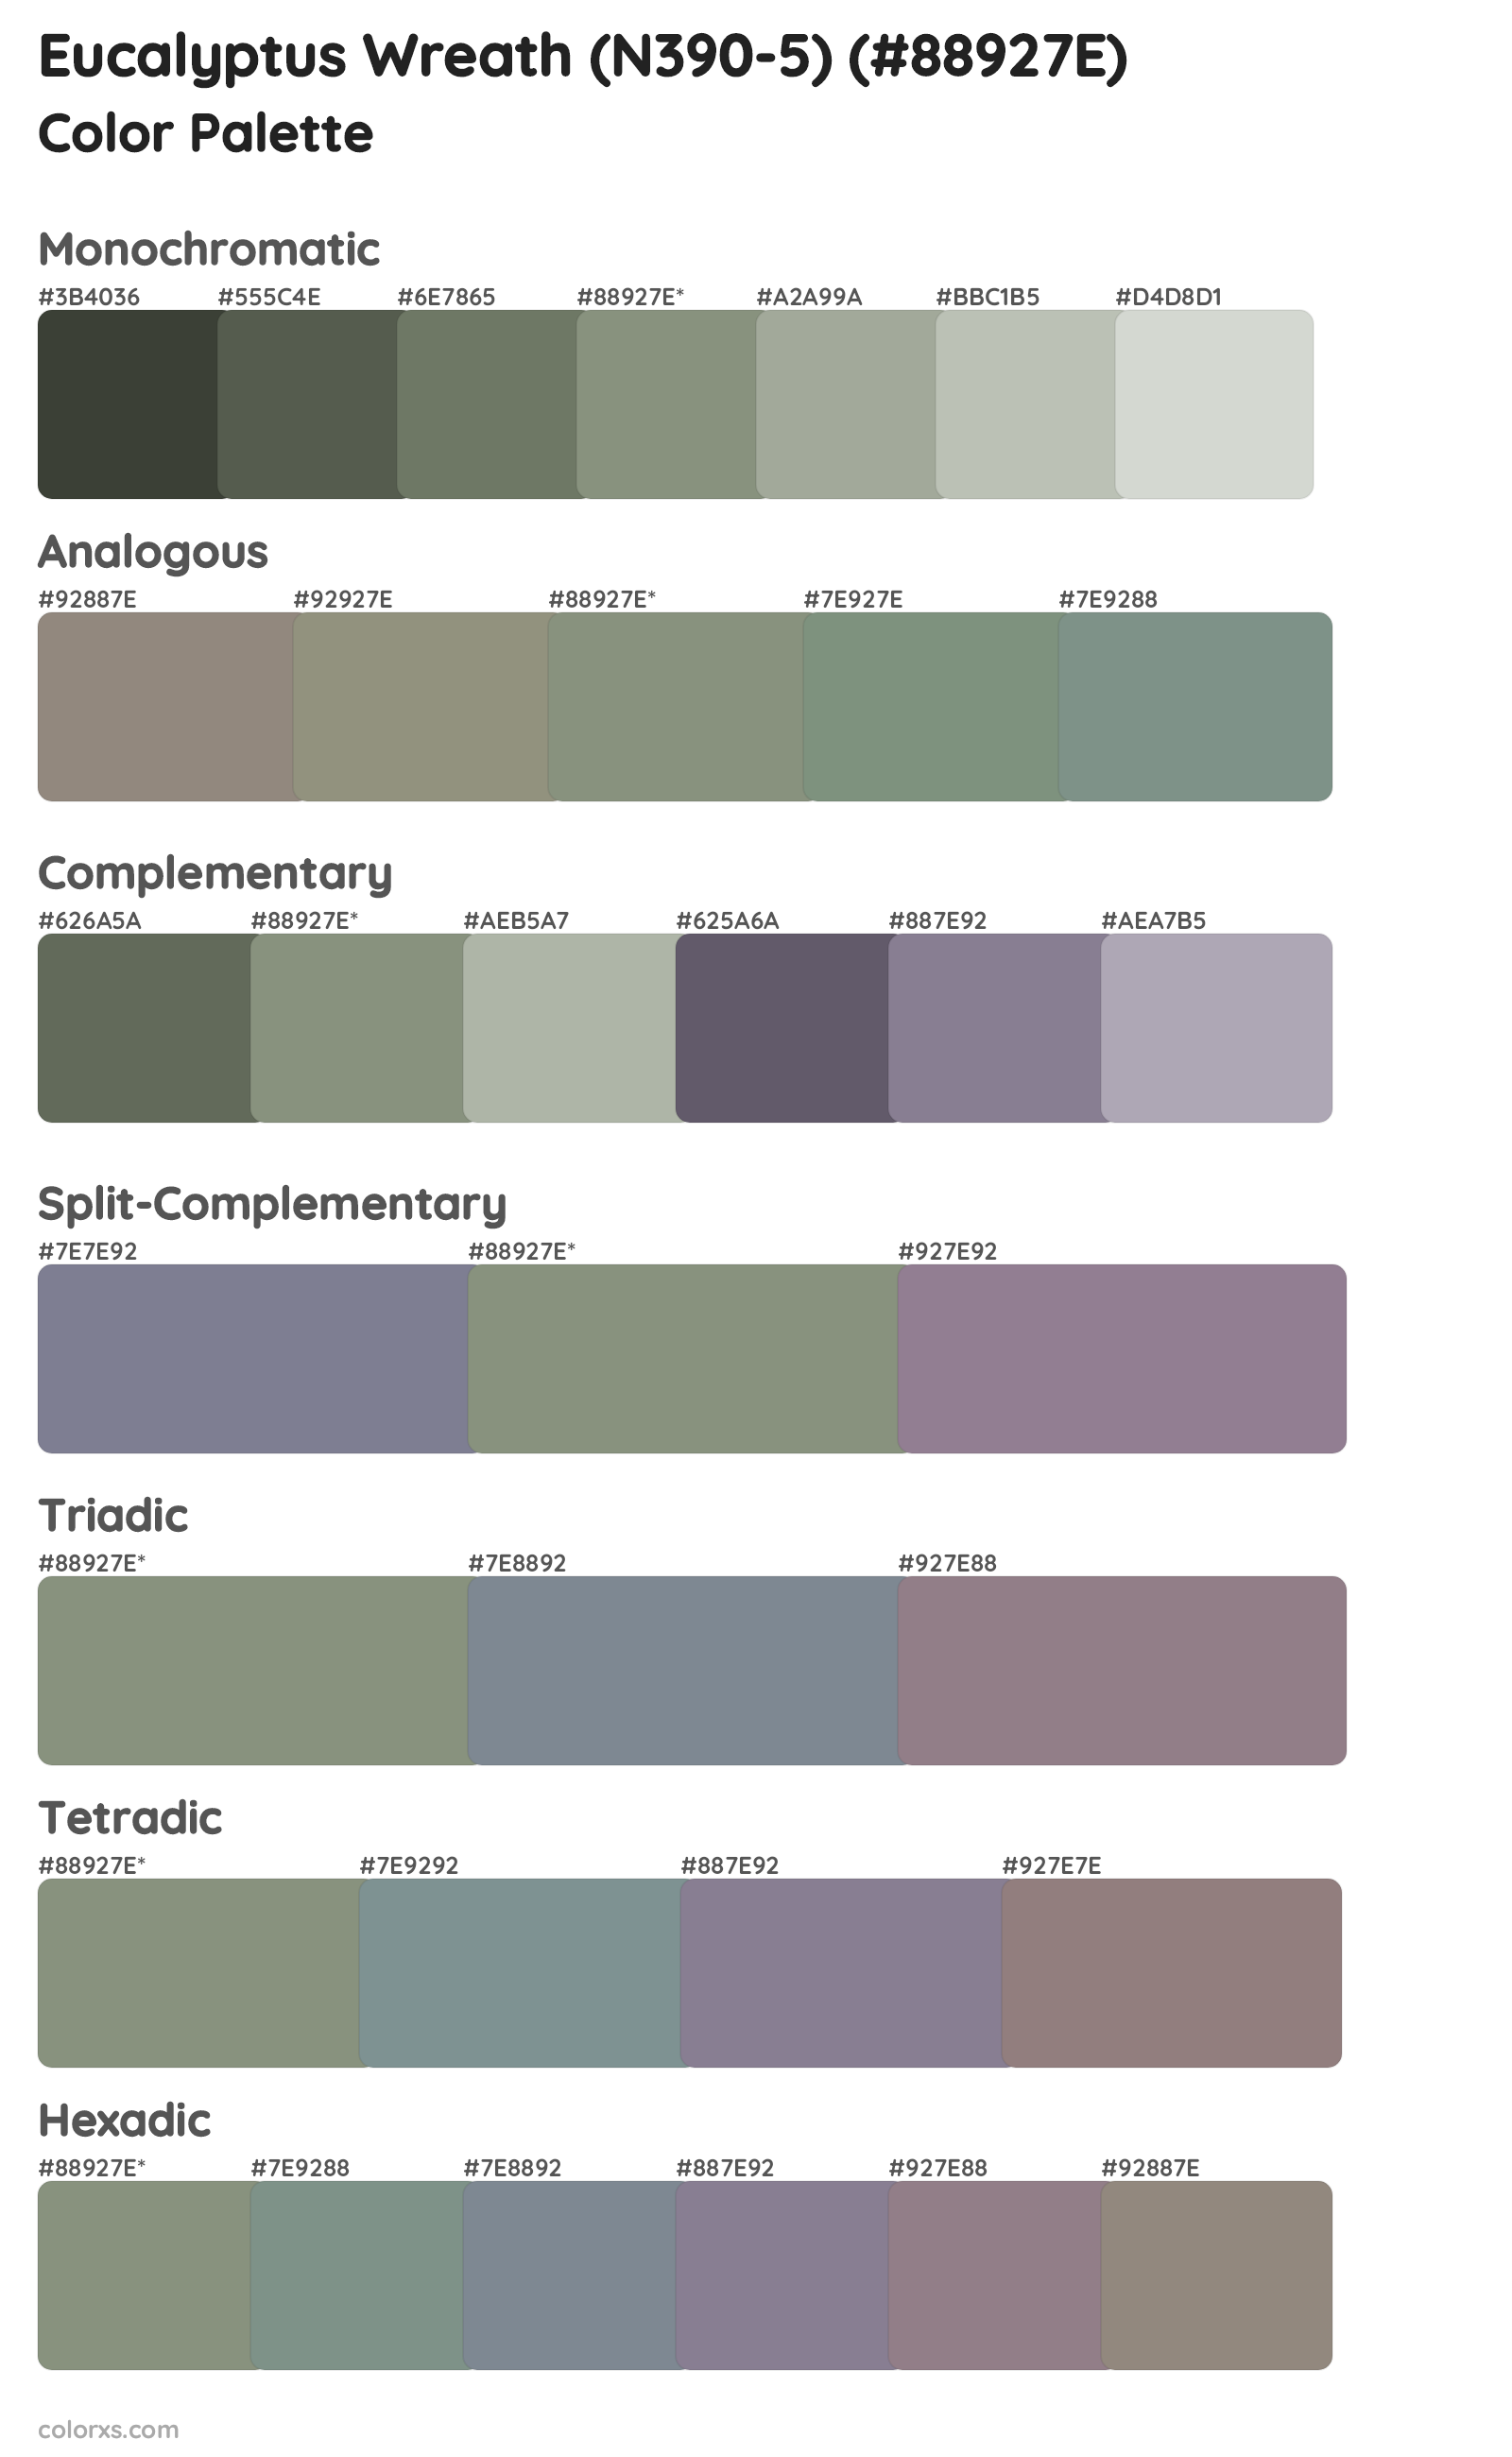 Eucalyptus Wreath (N390-5) Color Scheme Palettes